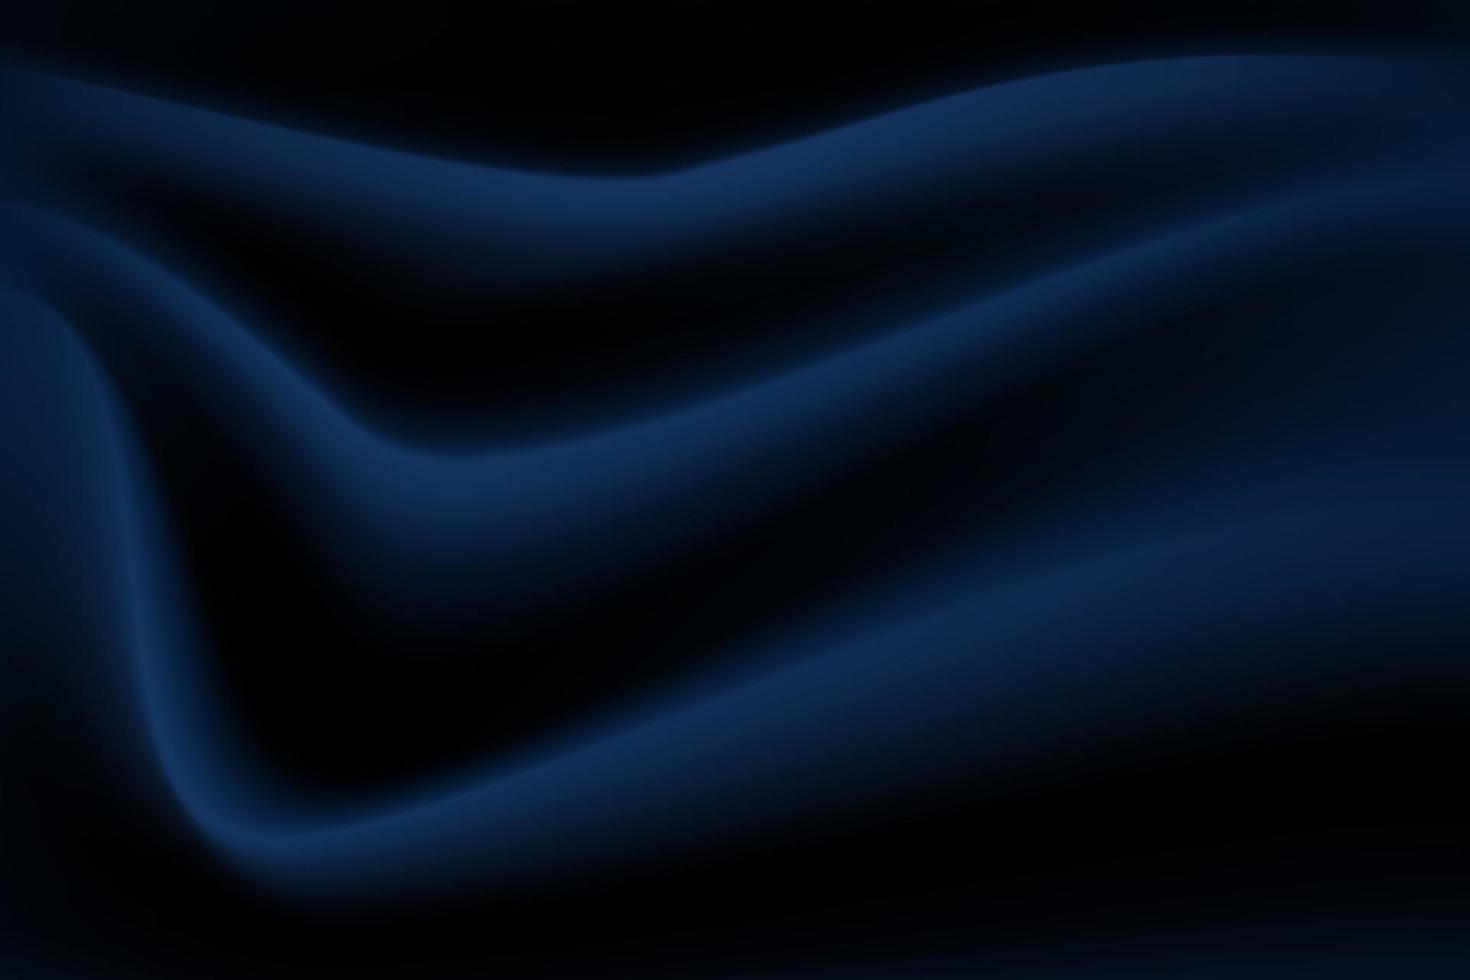 abstrait bleu foncé de luxe ondulé. tissu texture vague ombre doux tissu froissé fond. vecteur d'illustration